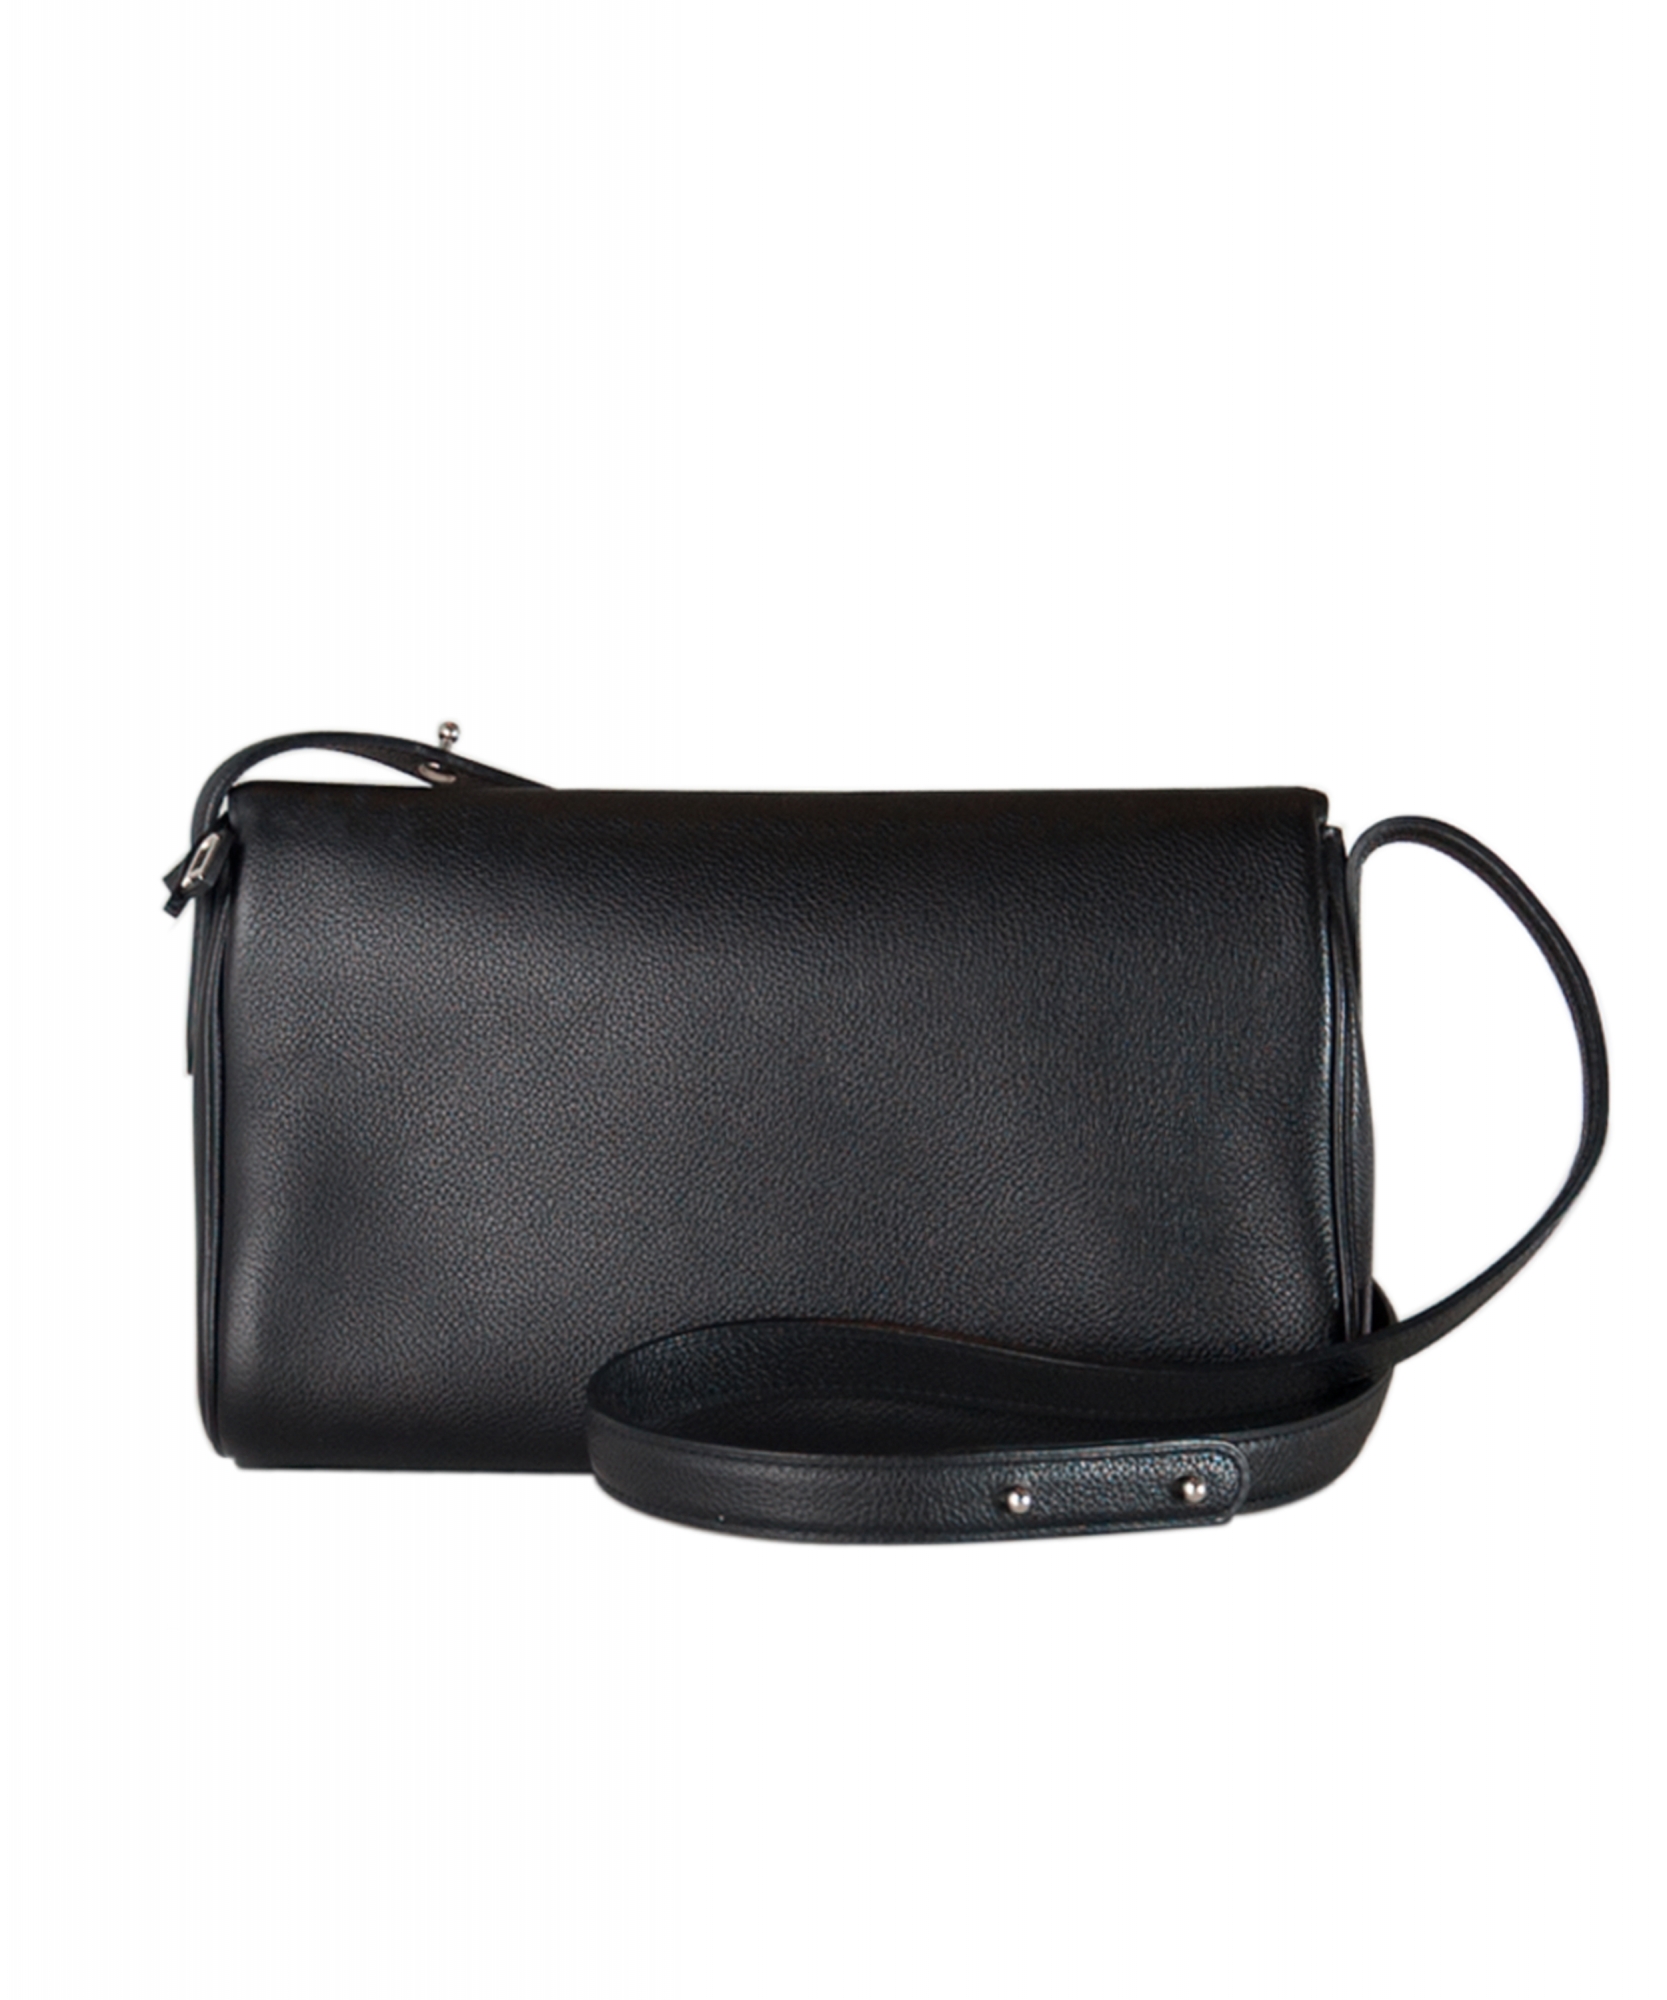 Delvaux - Authenticated Tempête Handbag - Leather Black Plain for Women, Very Good Condition